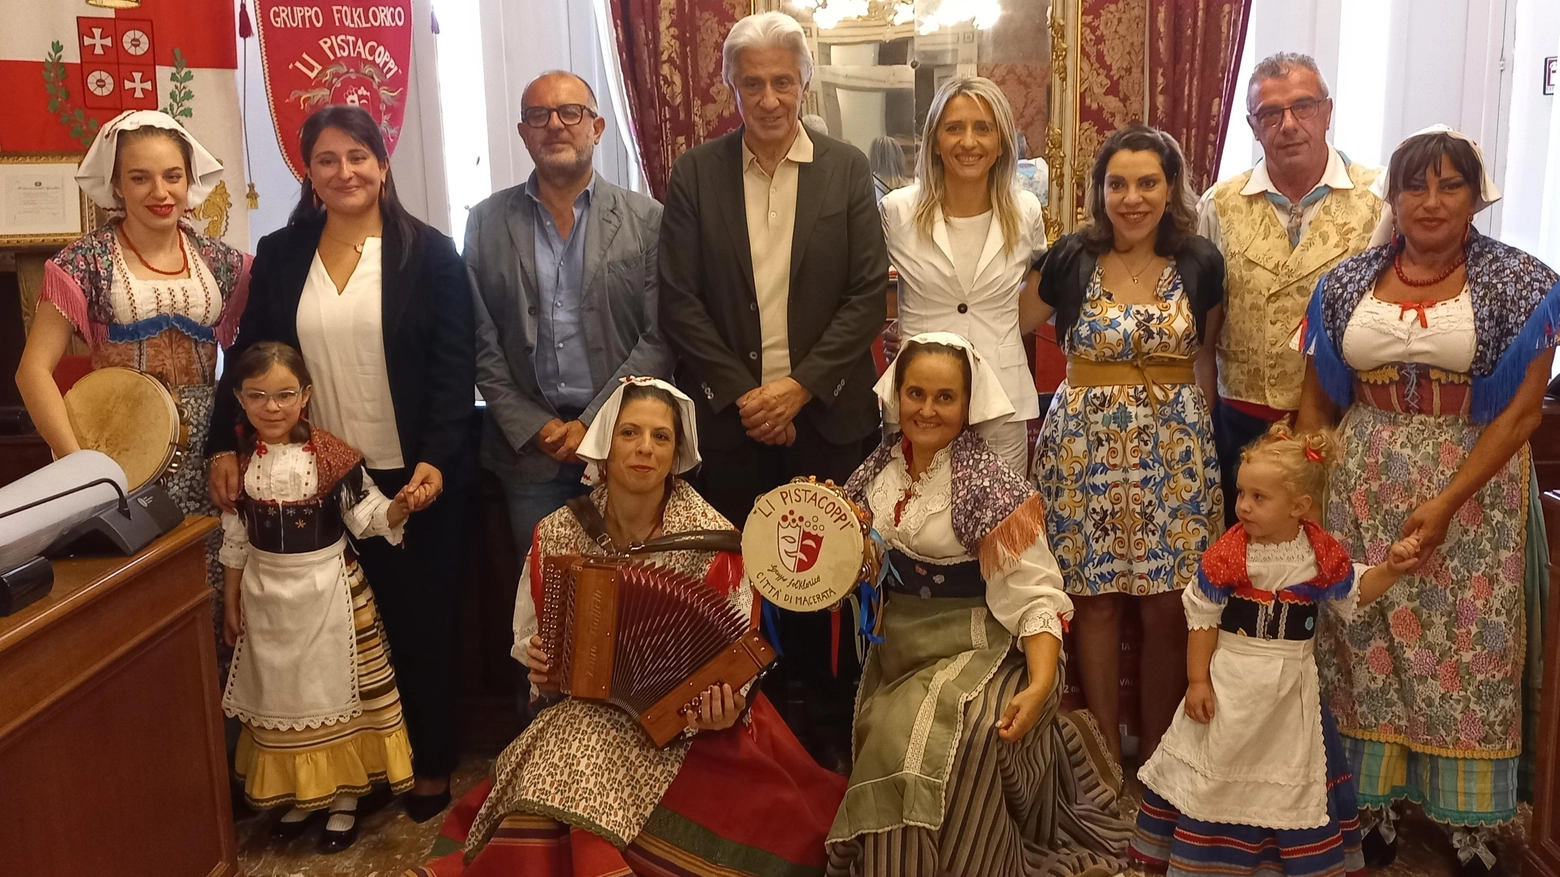 Folklore: festival internazionale  Popolazioni che si conoscono  unendo tradizioni e costumi